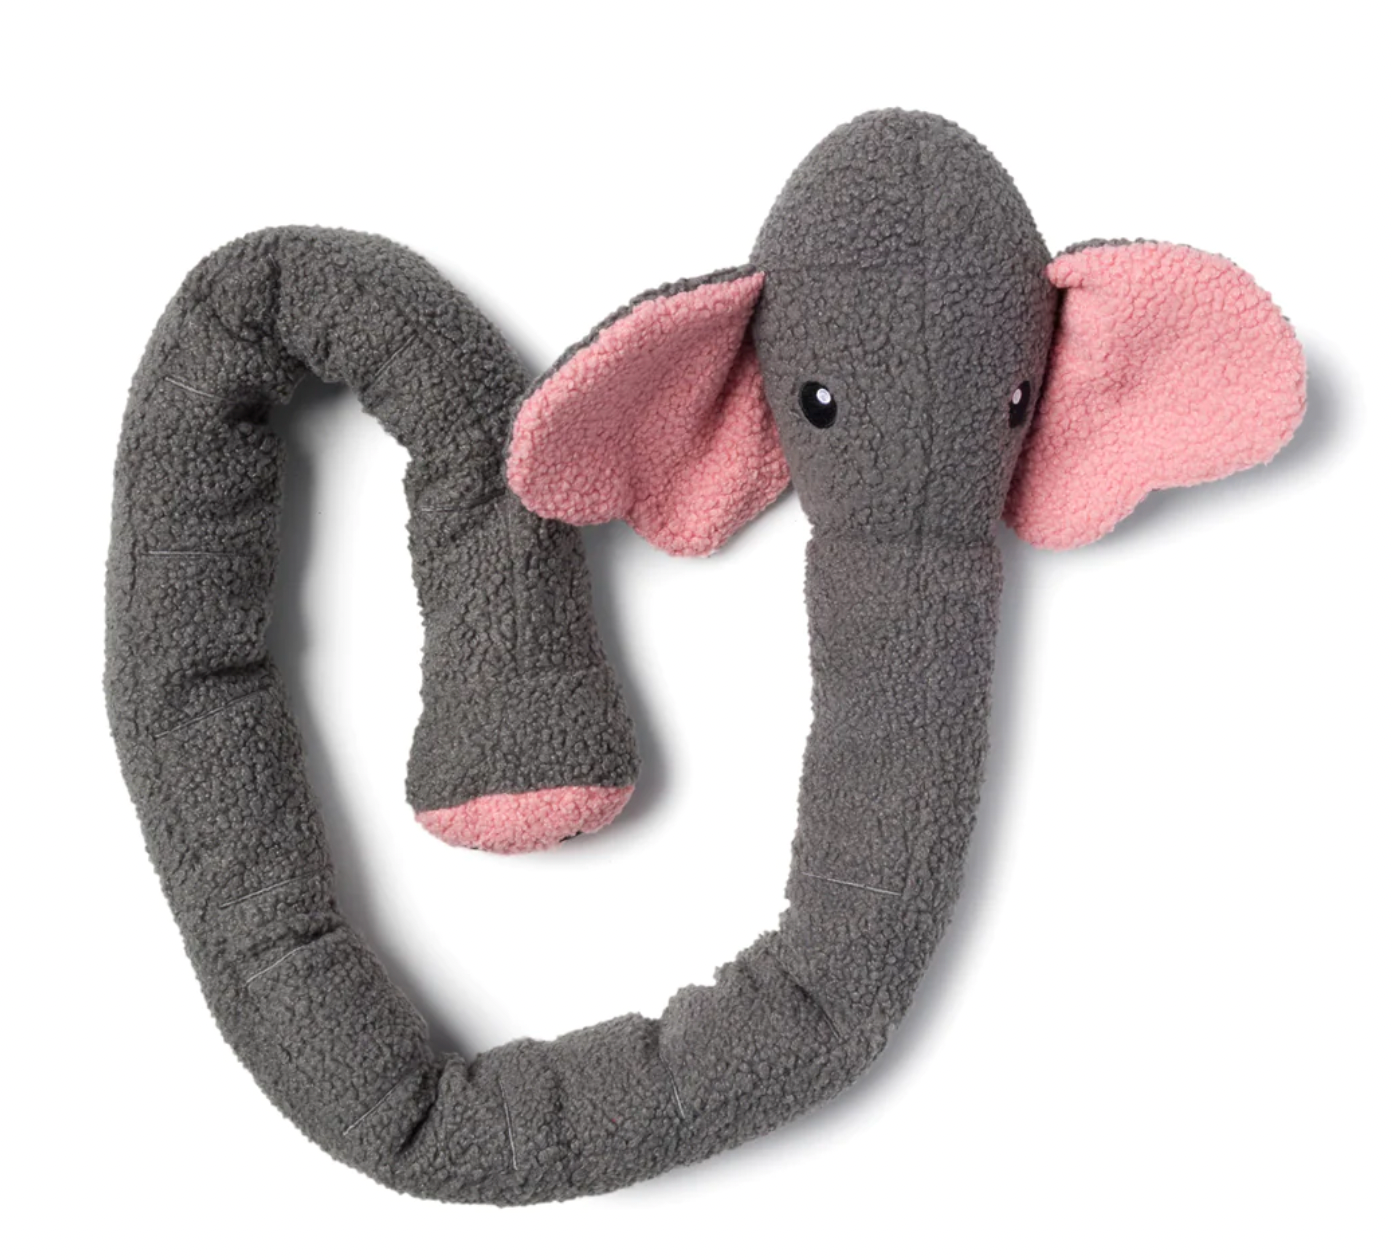 FabDog "Twisty" Crinkle-Squeaky-Plush 5 ft. long Dog Toy, Elephant